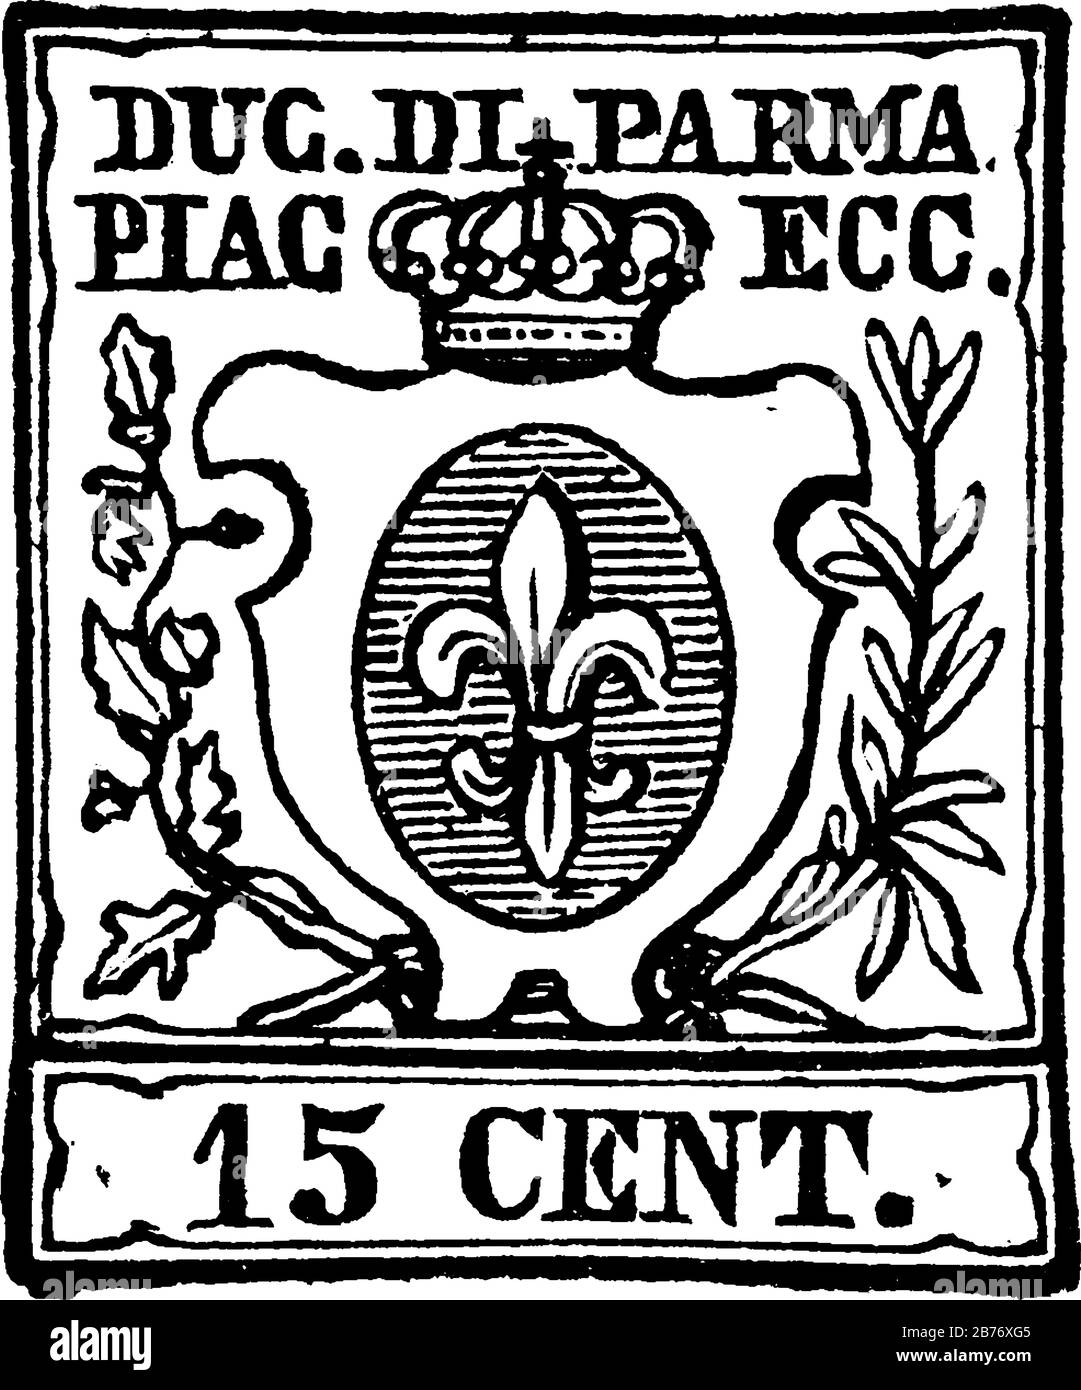 Parma Stempel (15 centesimi) von 1857-1859, ein kleines selbstklebendes Stück Papier steckte an etwas fest, um eine Menge an gezahltem Geld zu zeigen, Vintage Line Drain Stock Vektor